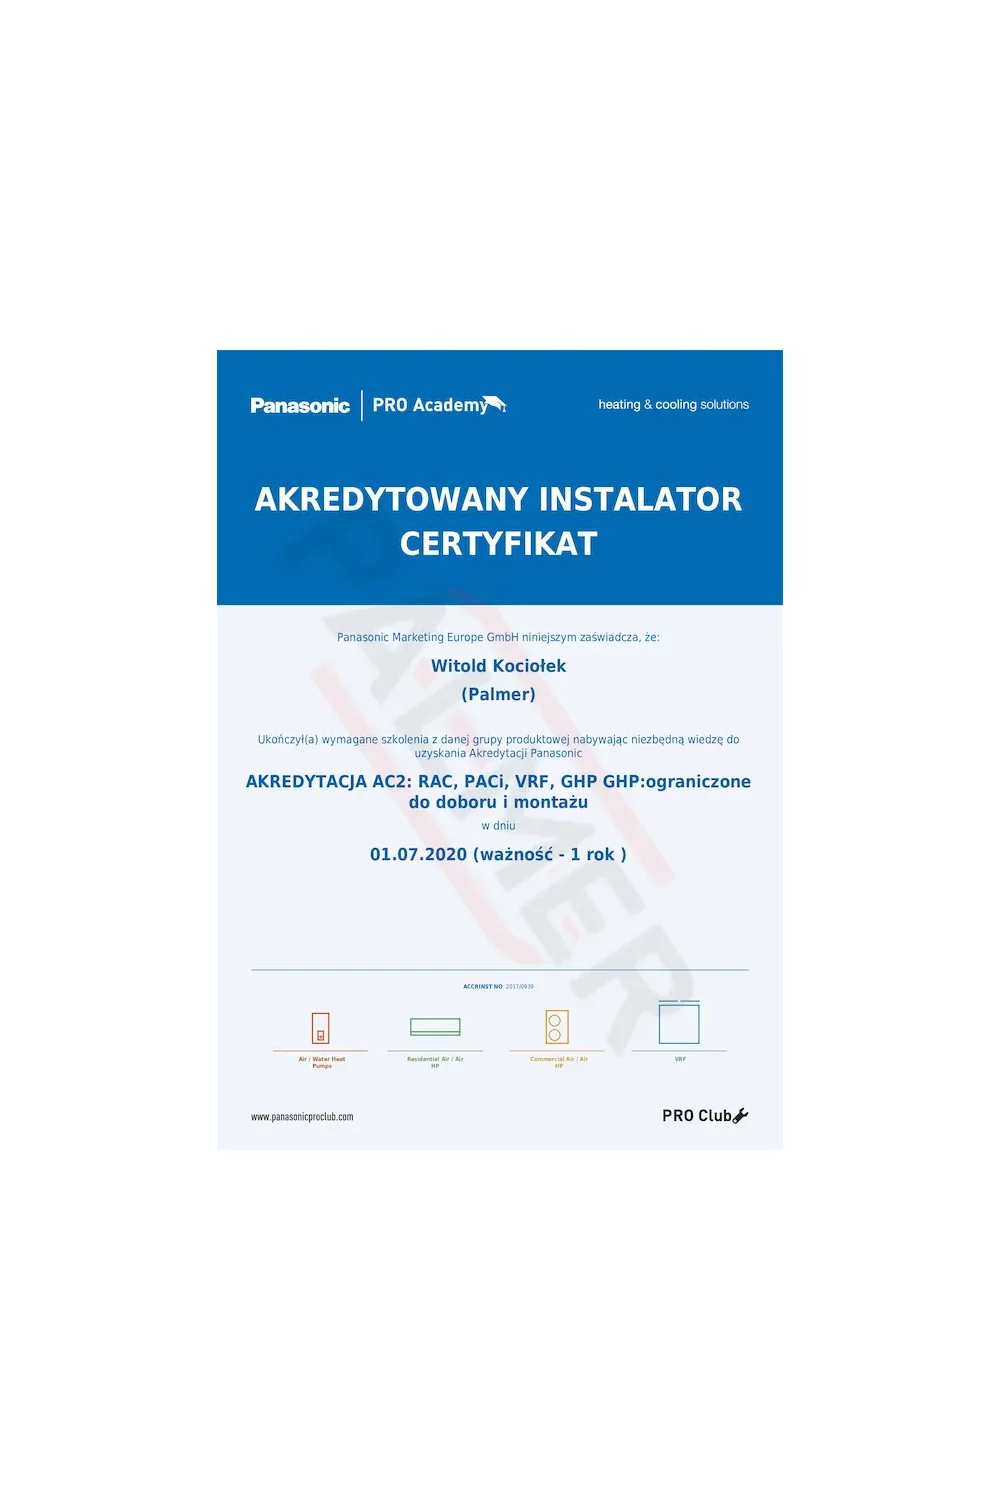 Certyfikat Autoryzowanego Instalatora Panasonic - akredytacja AC2 - zdjęcie